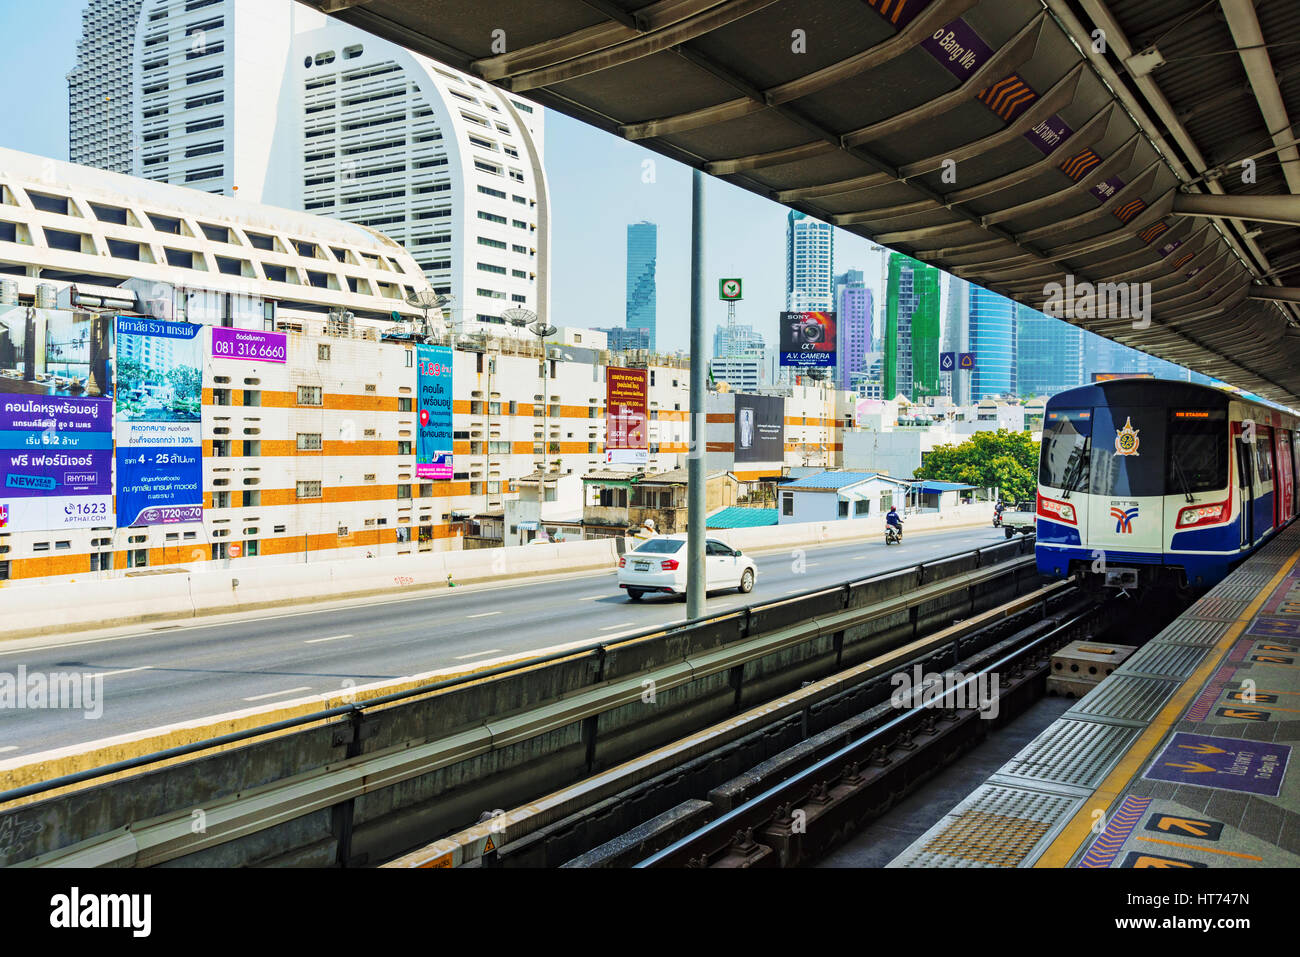 BANGKOK, THAÏLANDE - 30 janvier : la station de BTS Sky train plate-forme avec une vue sur les bâtiments du centre-ville de Bangkok dans l'arrière-plan le 30 janvier 2017 à Bang Banque D'Images